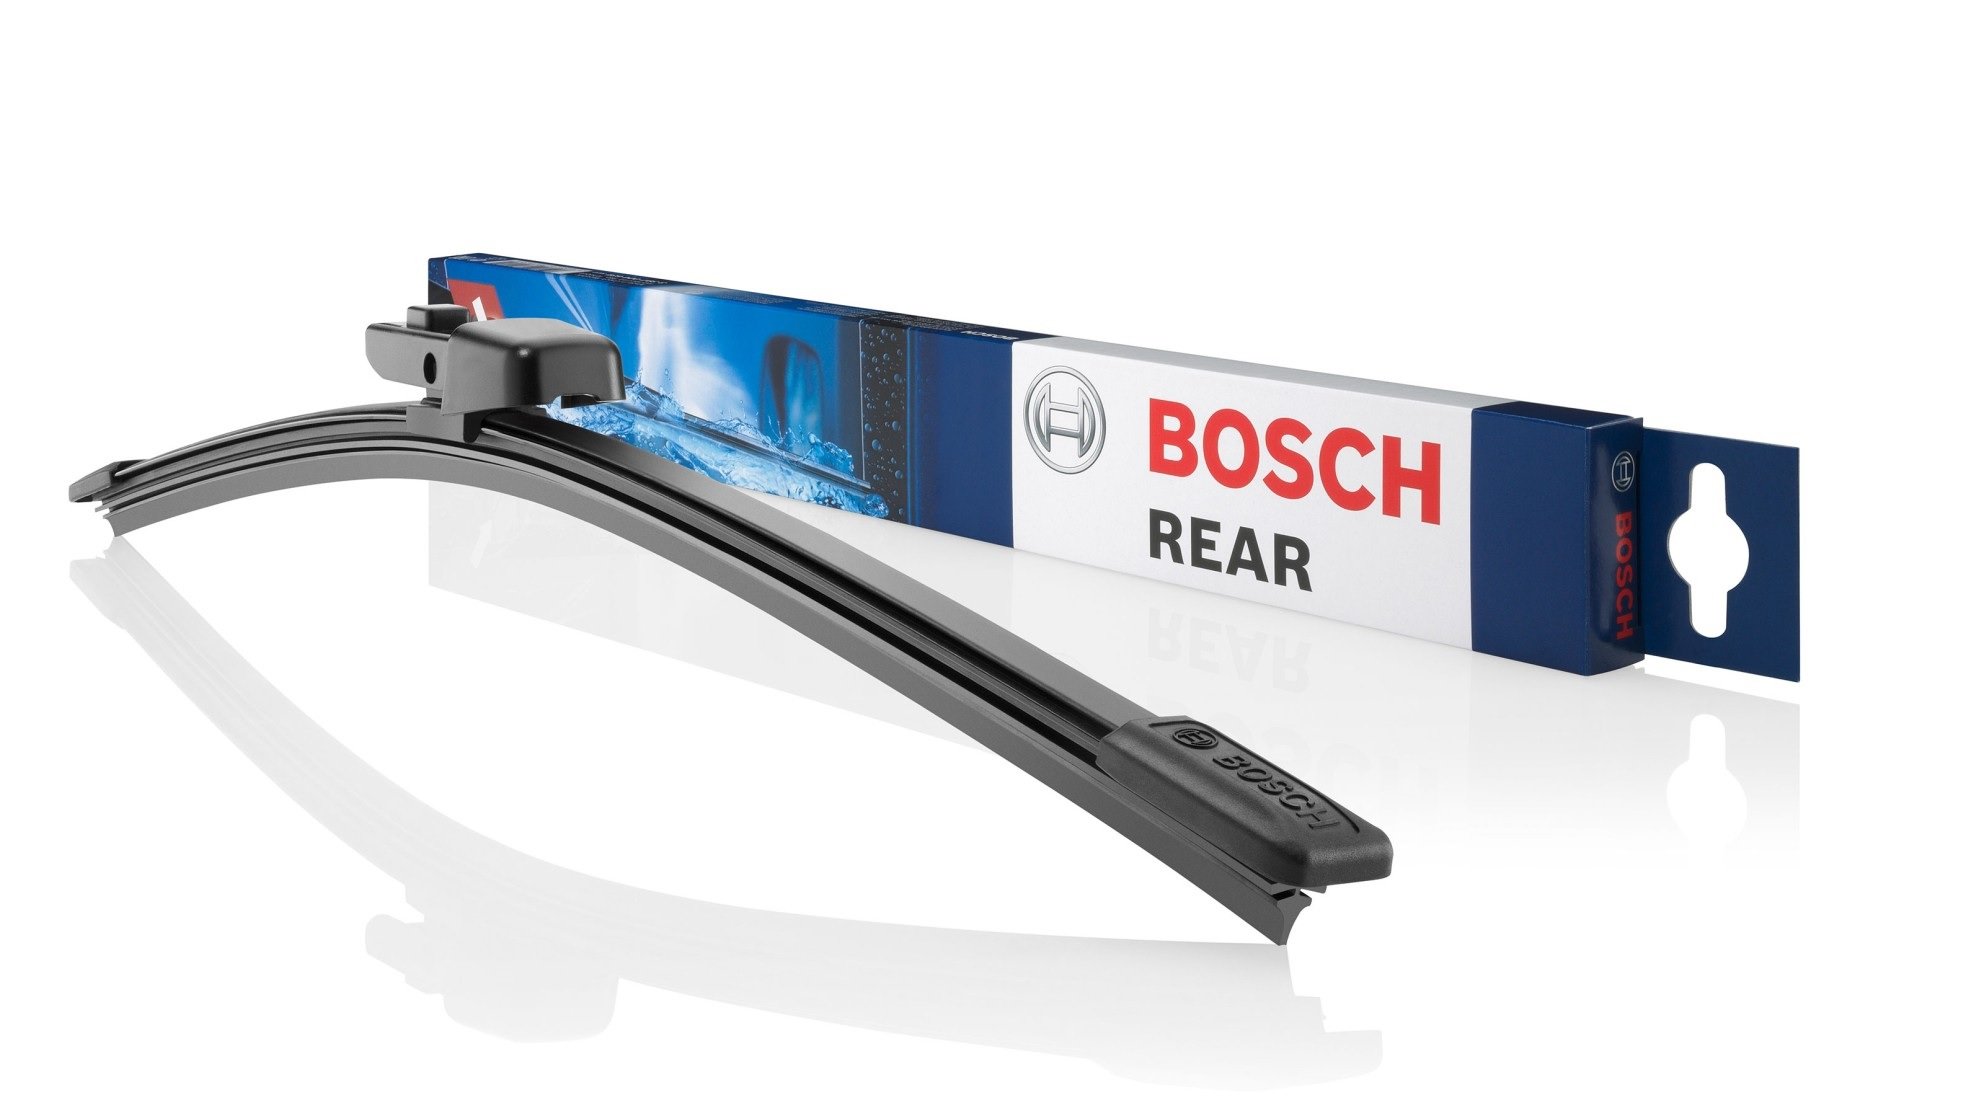 Bosch Rear Car Wiper